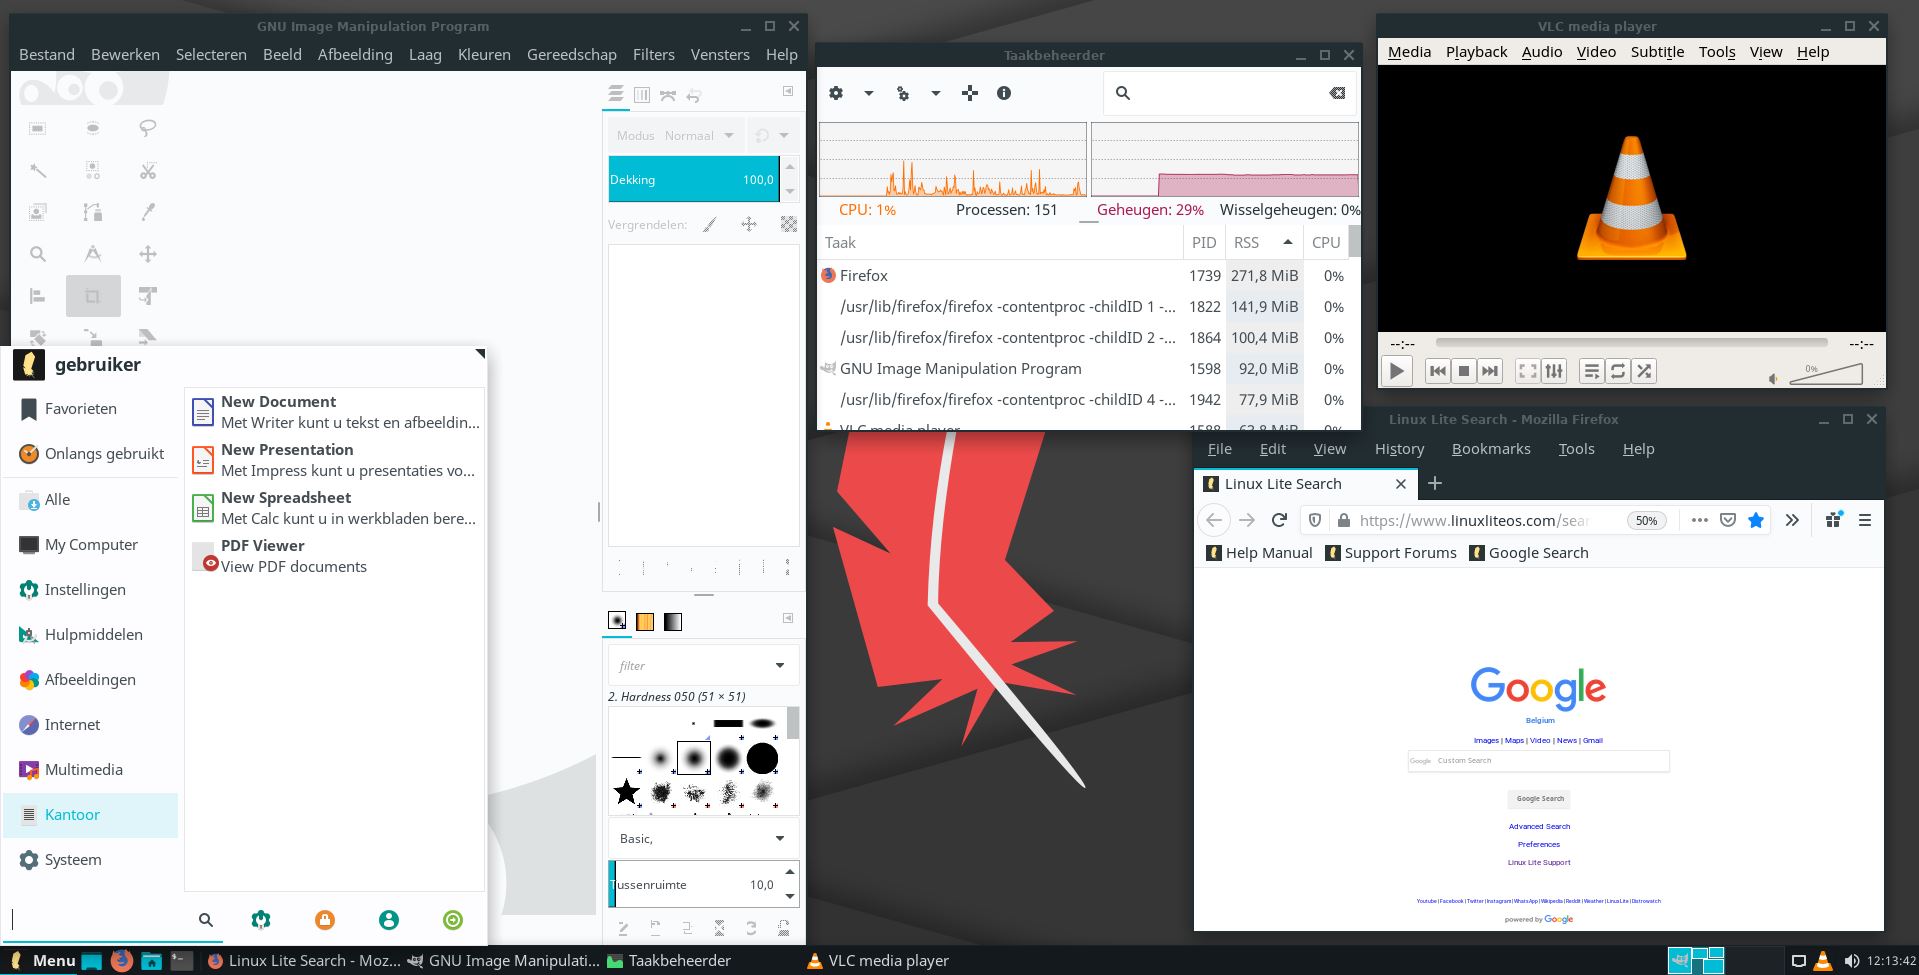 schermafbeelding van Linux Lite